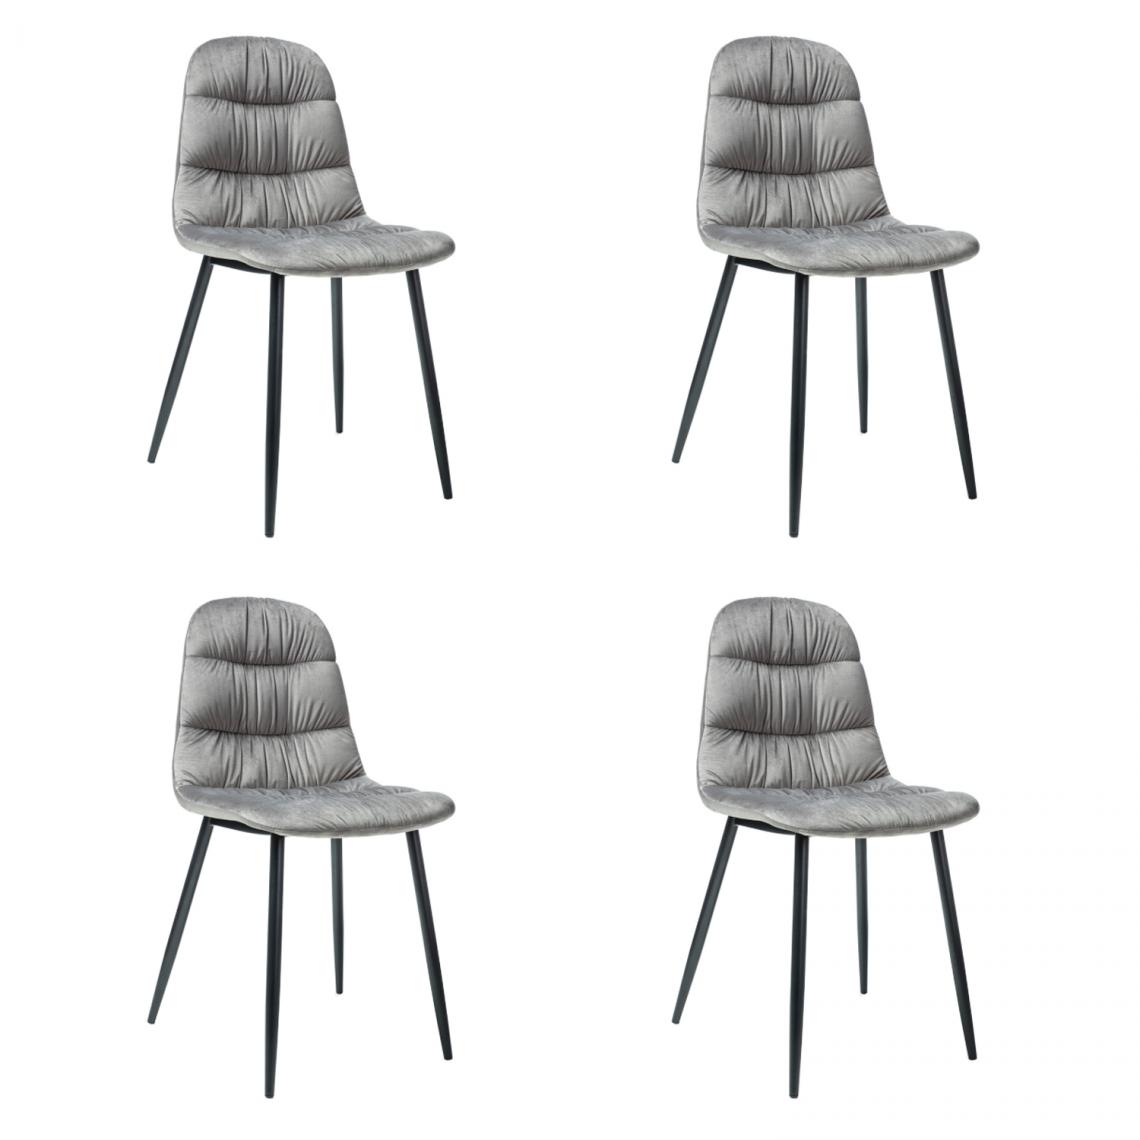 Hucoco - VEBIS - Lot de 4 chaises pour la salle à manger - Style scandinave - 87x44x38 cm - Ttissu velouté - Gris - Chaises